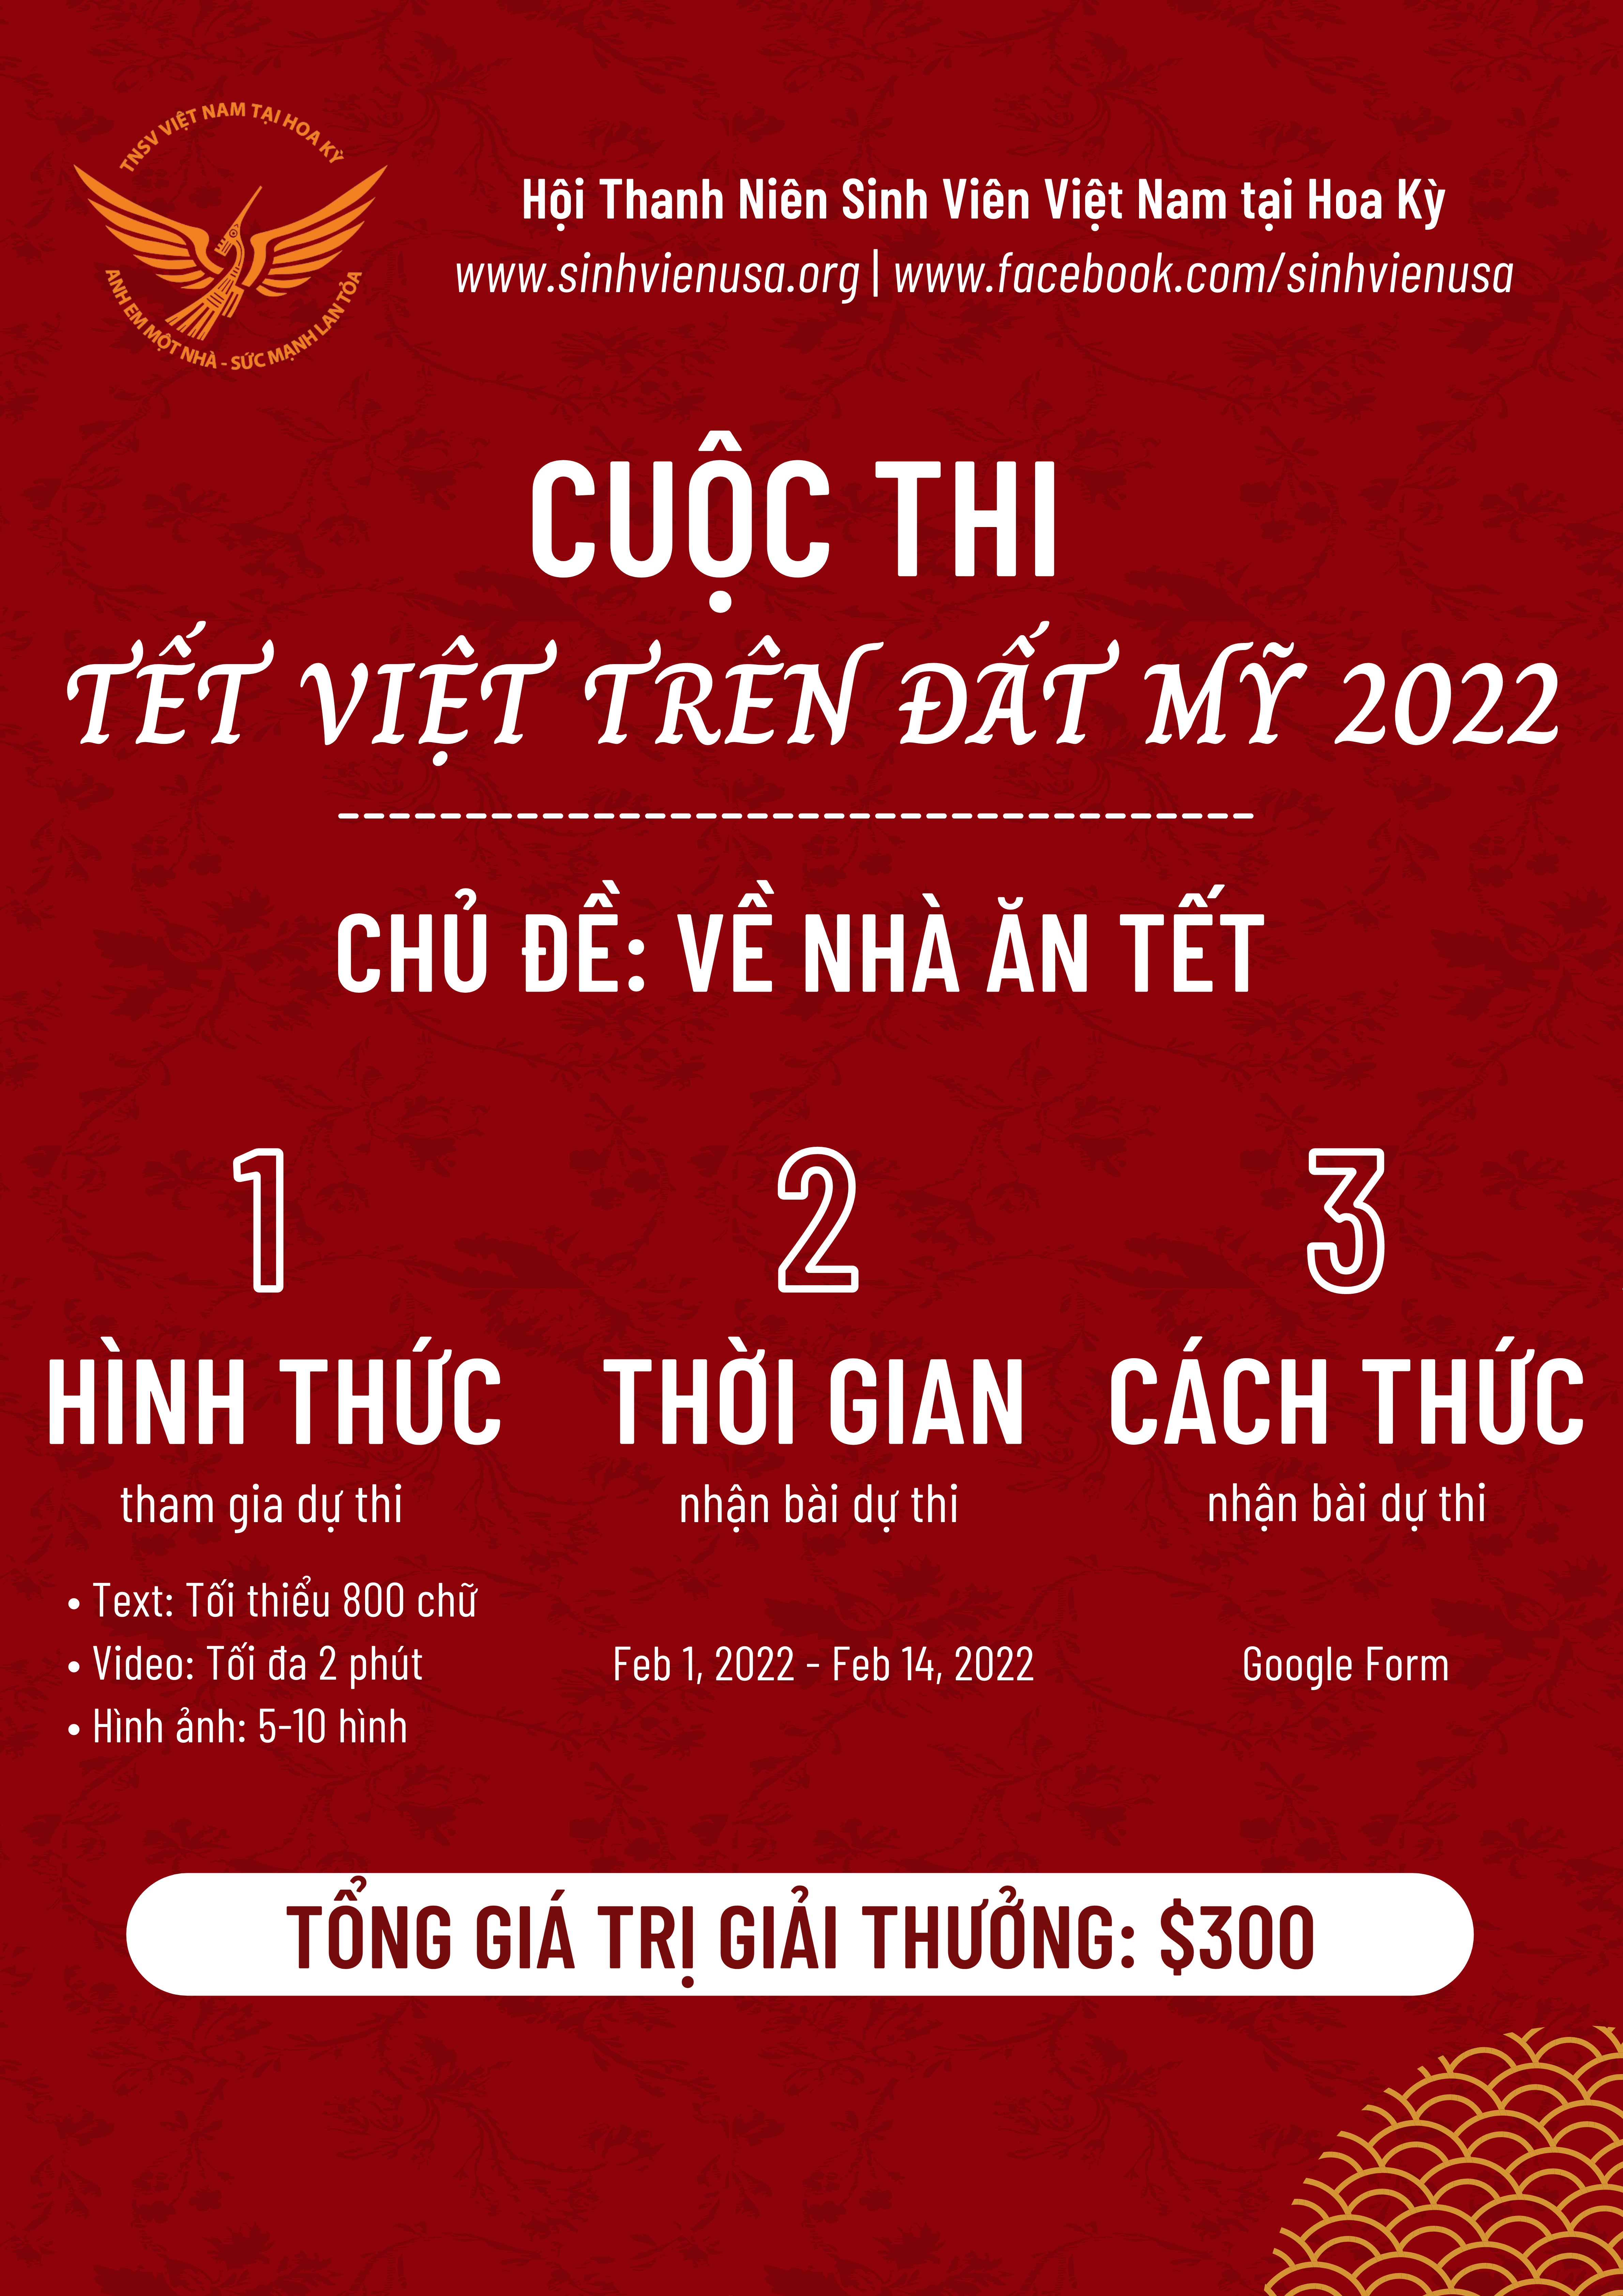 tết Việt trên đất Mỹ 2022